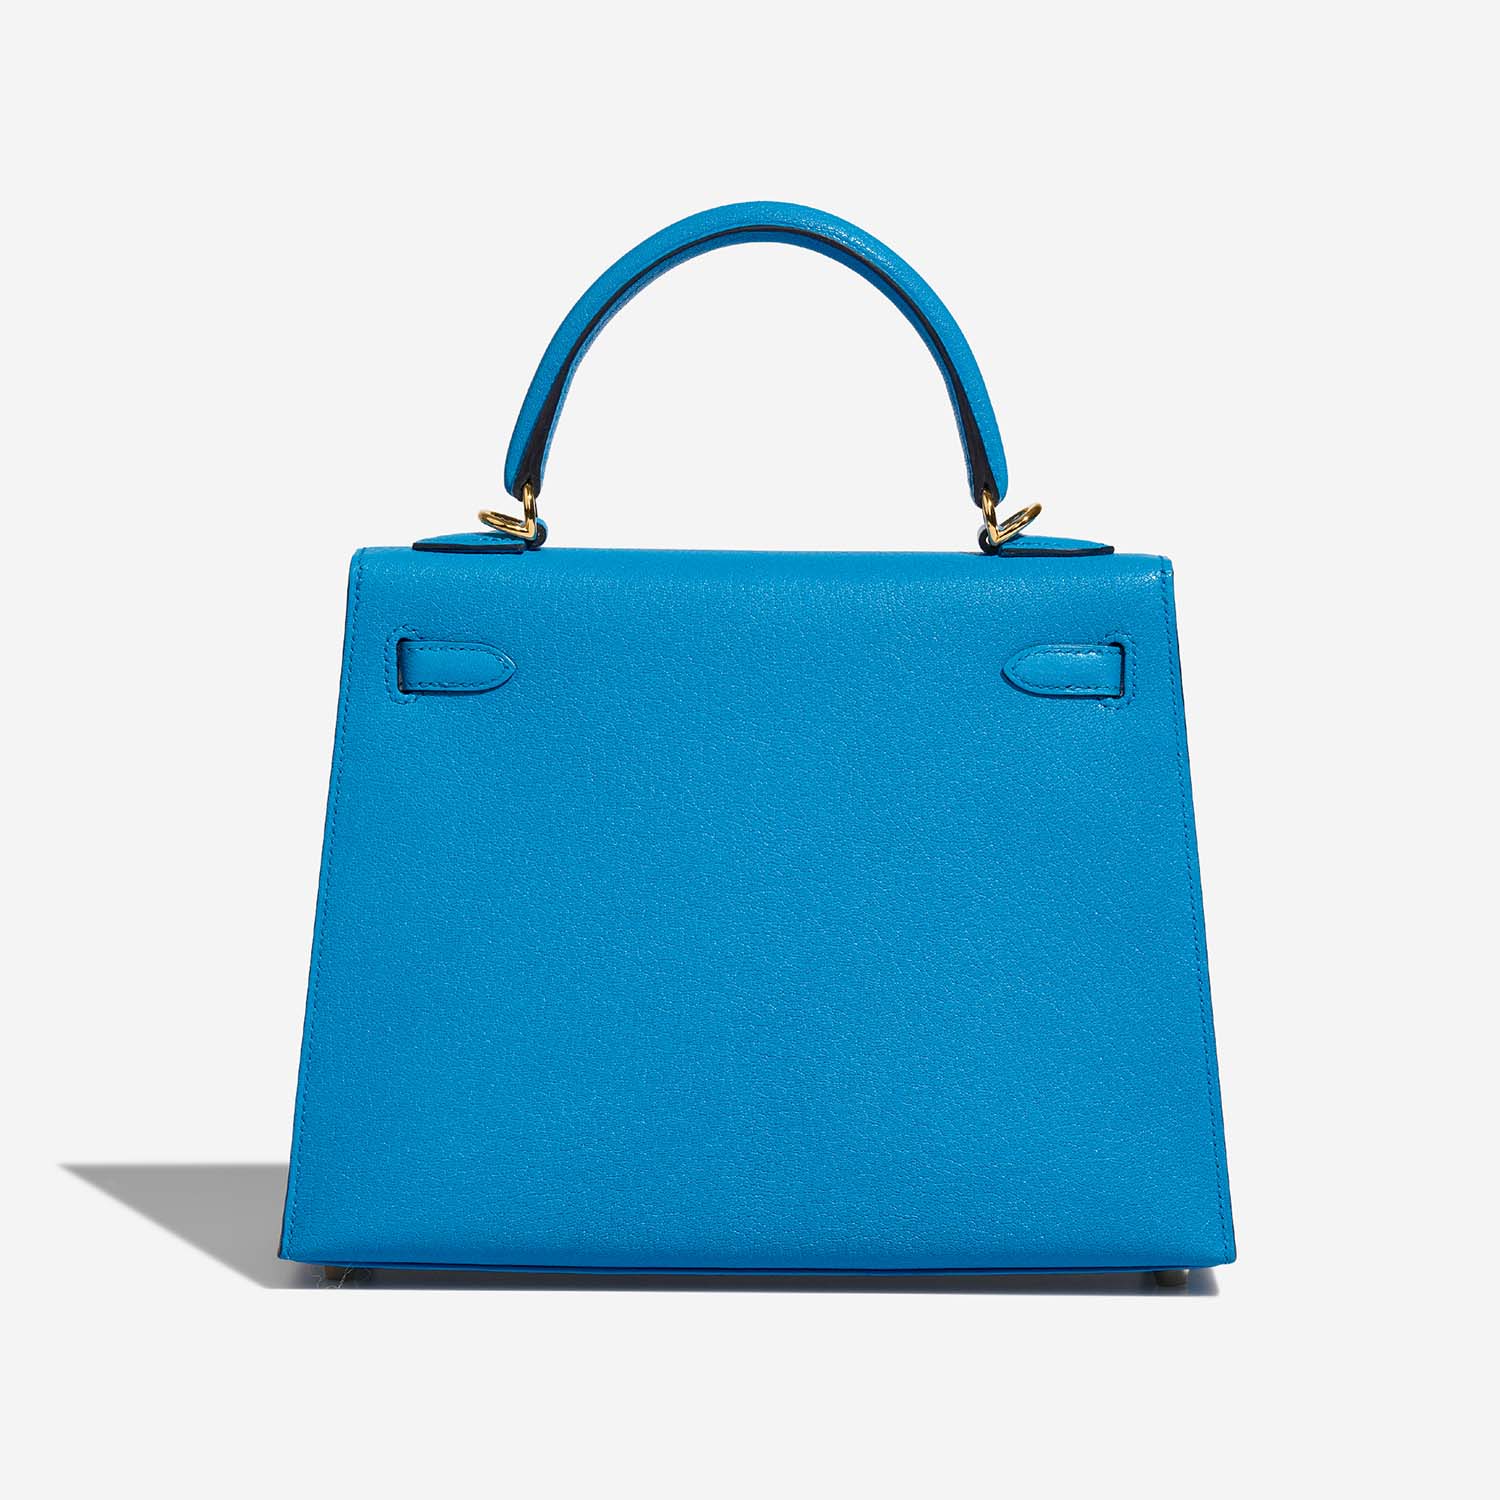 Hermès Kelly 25 BlueFrida 5B S | Verkaufen Sie Ihre Designertasche auf Saclab.com